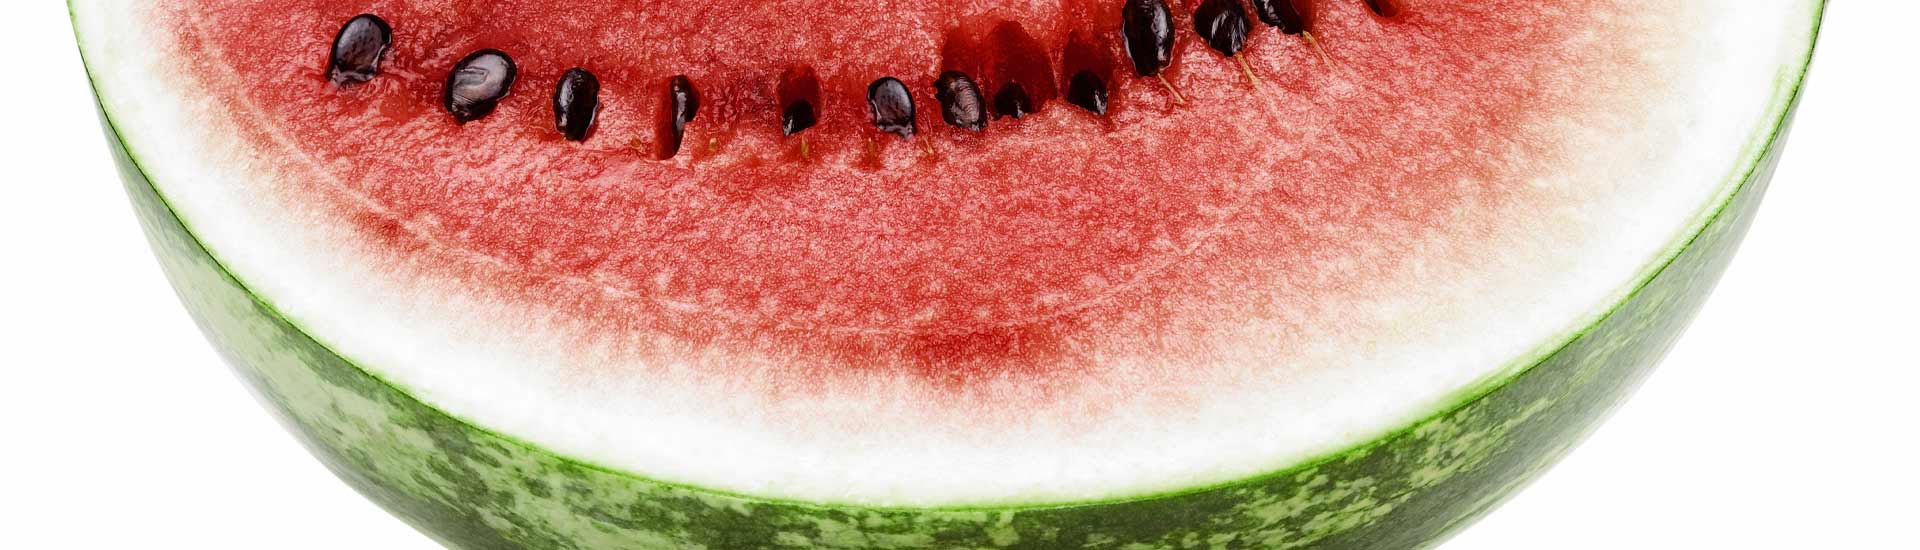 Photo: Image of a Melon